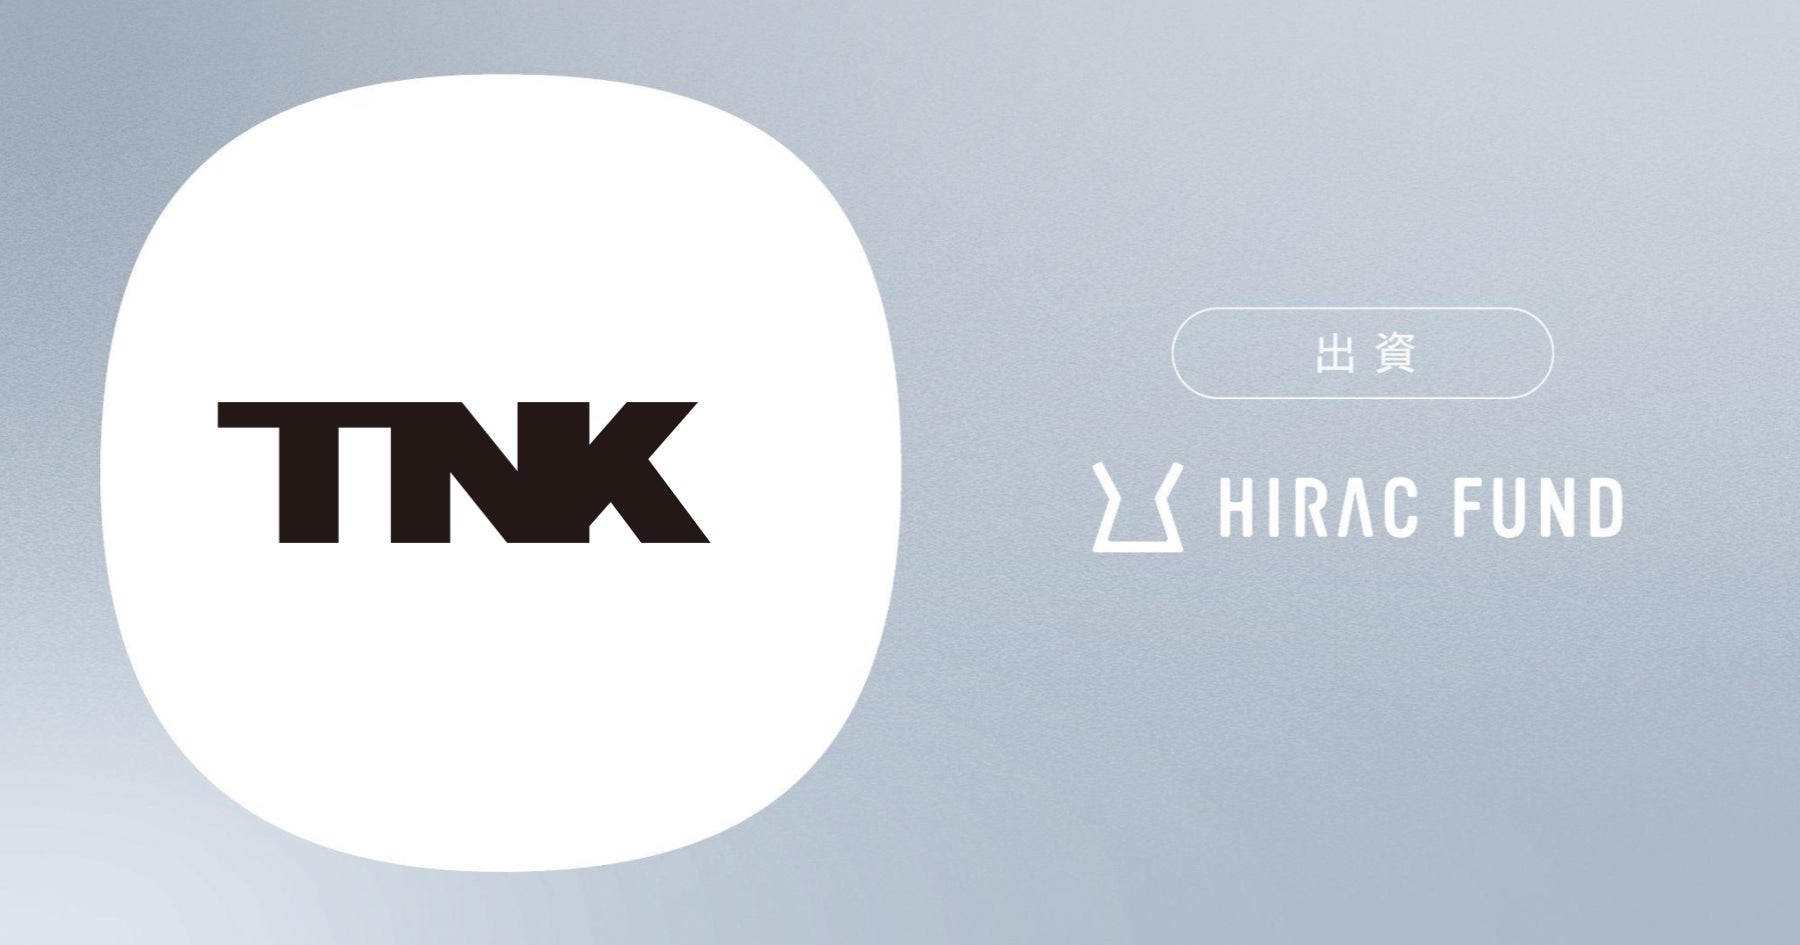 HIRAC FUND、バーチャルエンターテインメント事業を展開するTHINKRに出資